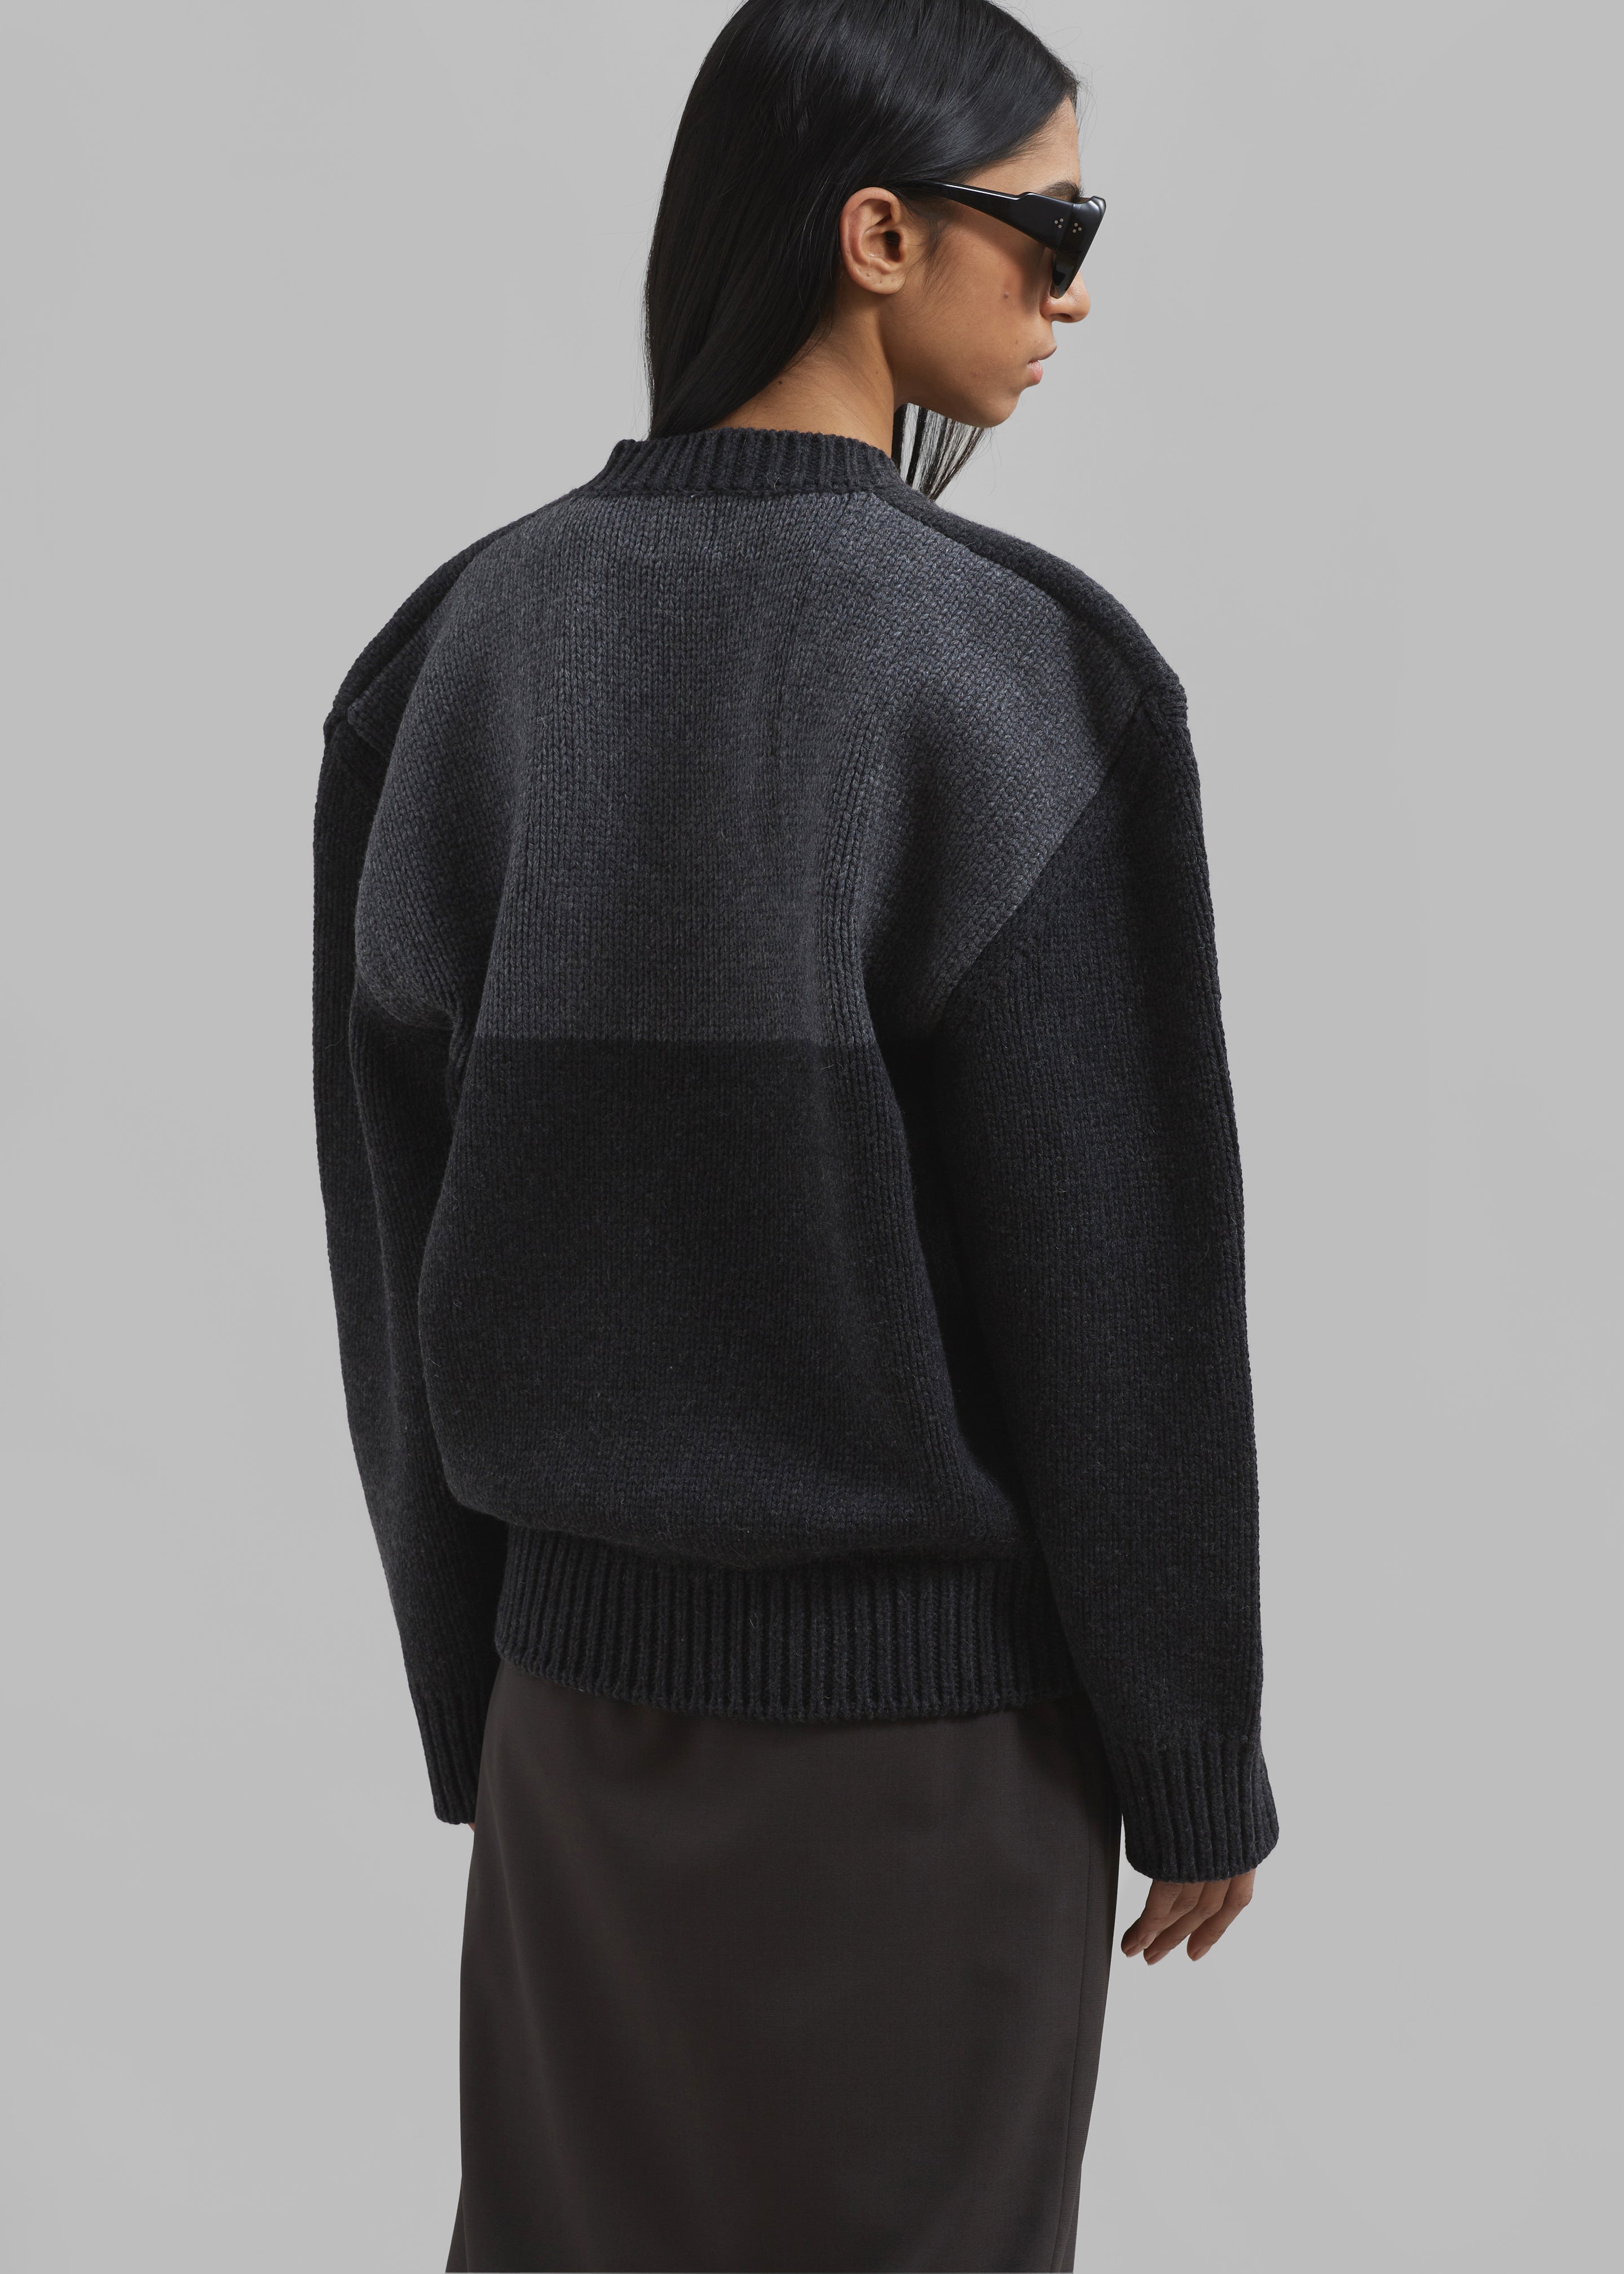 Edina Two Tone Wool Sweater - Charcoal - 2